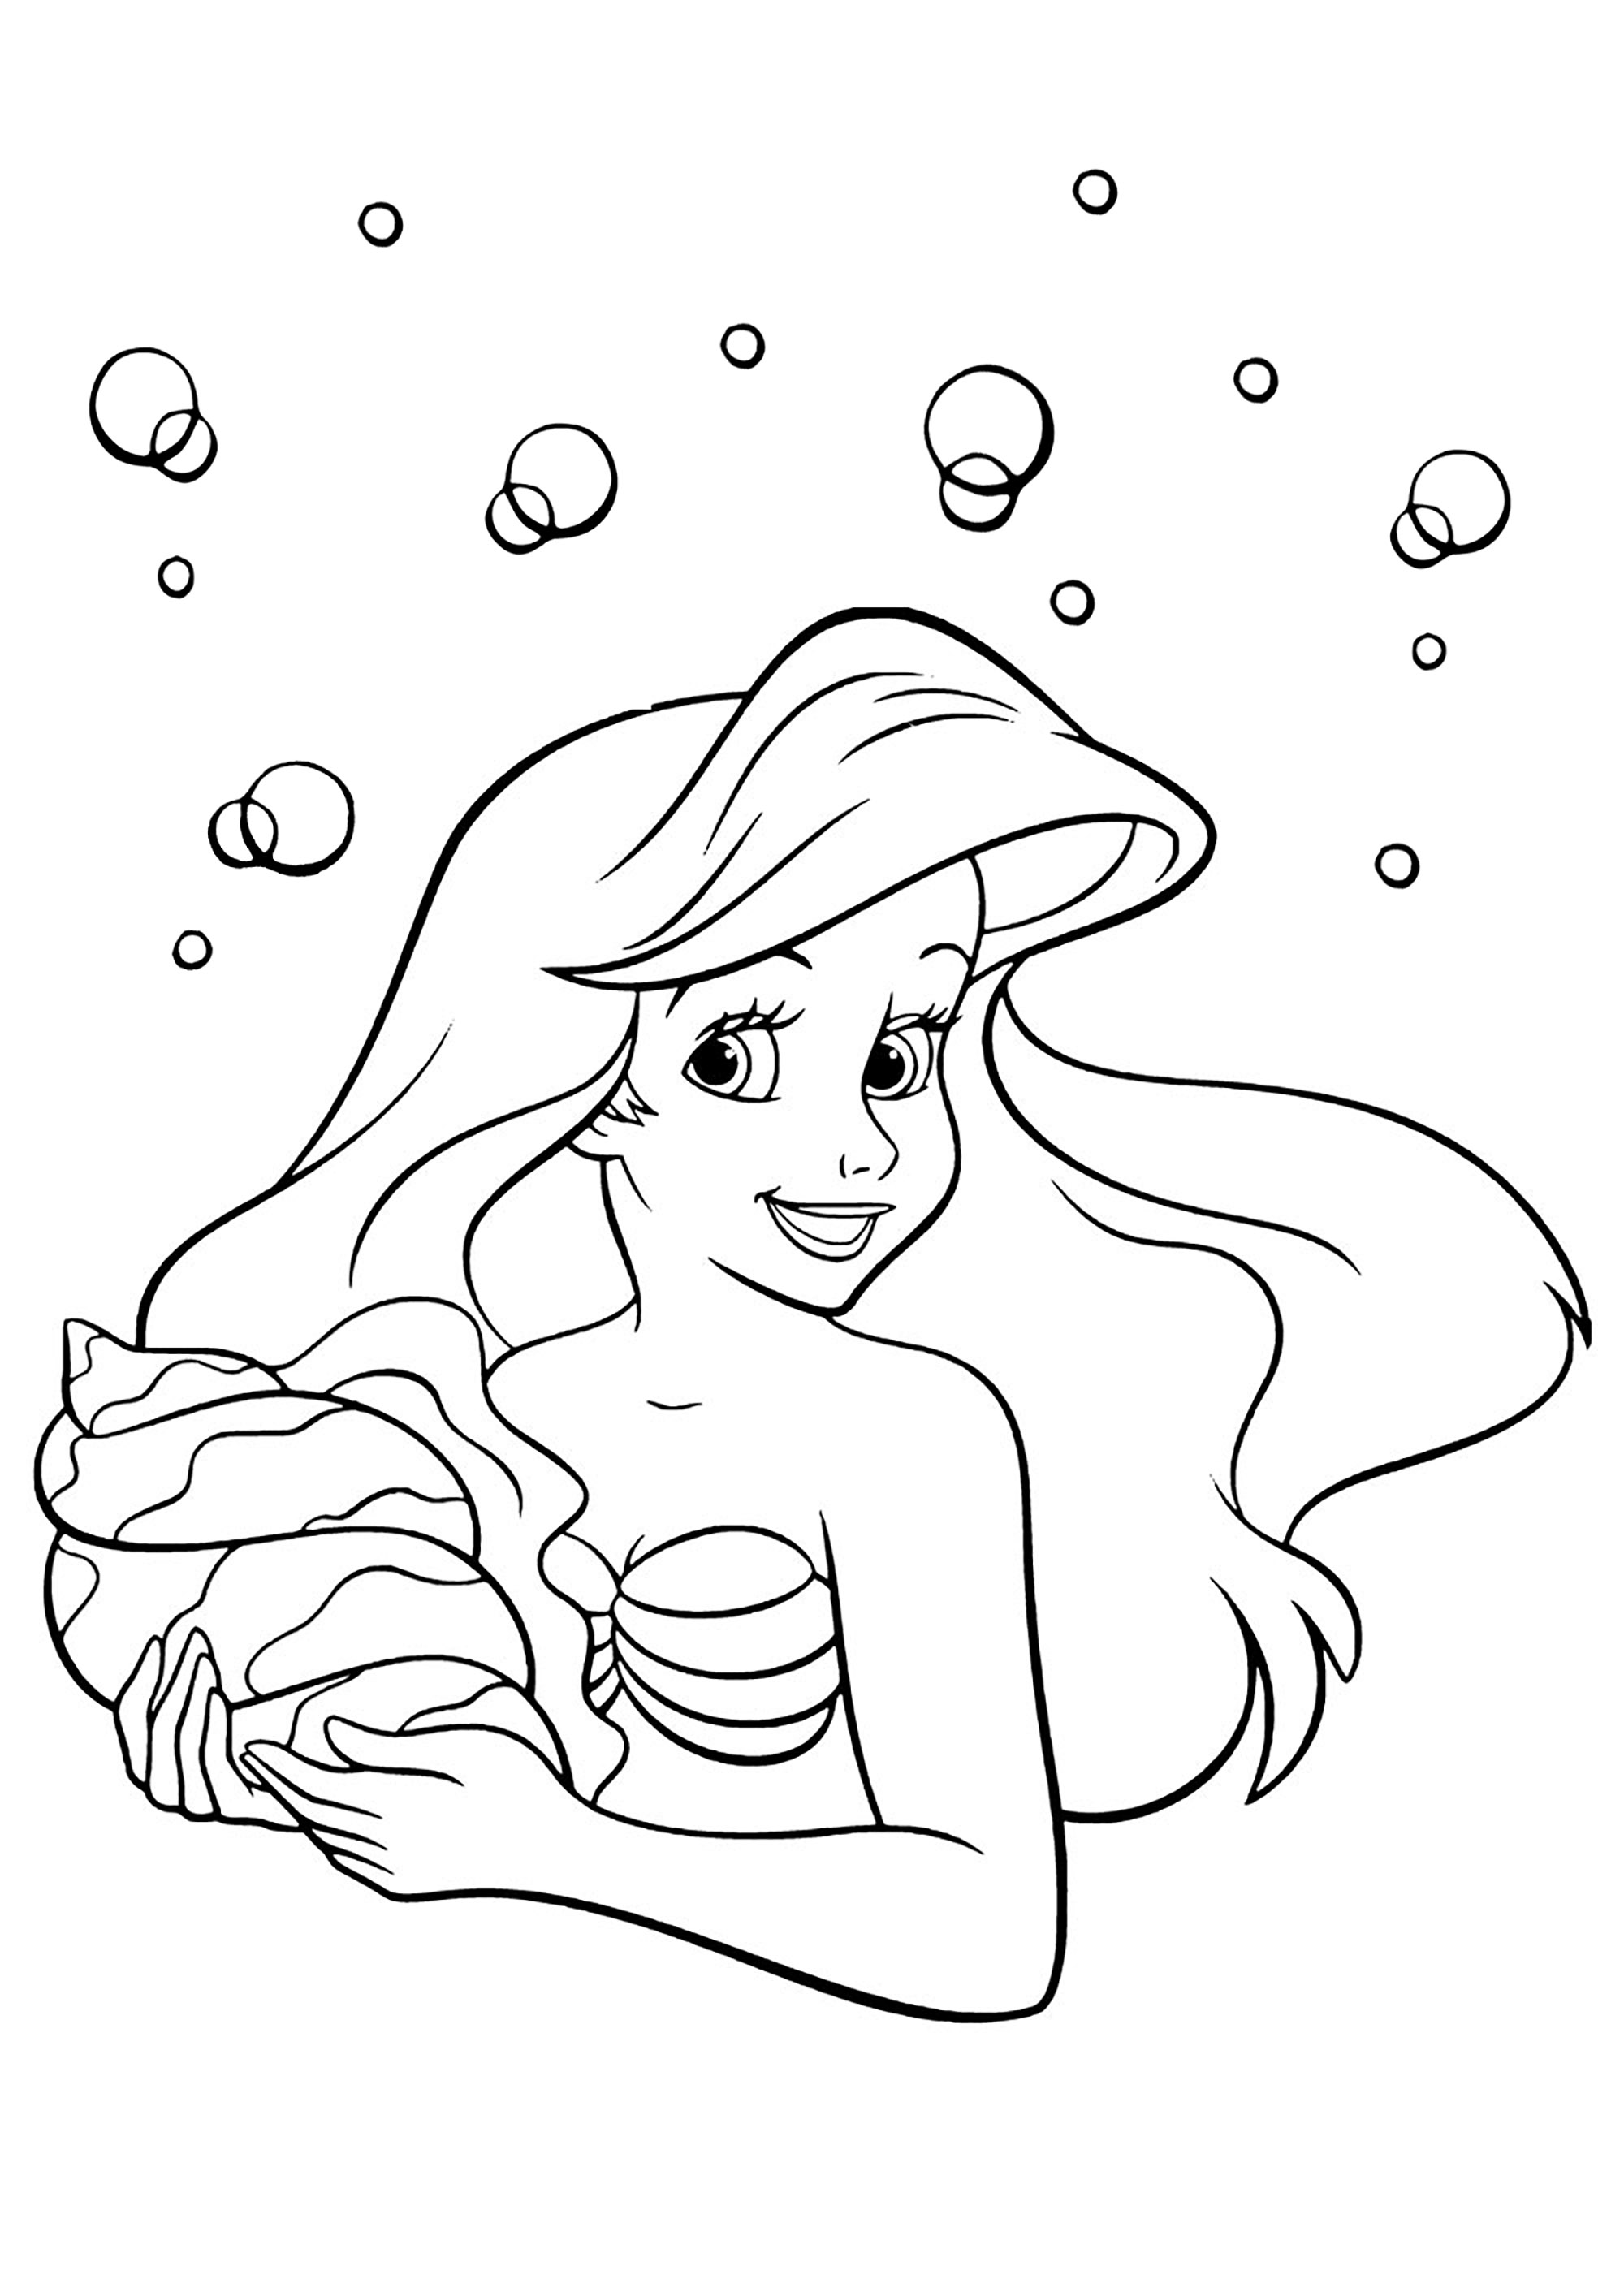 Ariel la Sirenita y una bonita concha marina. Coloreado muy sencillo con pocos detalles